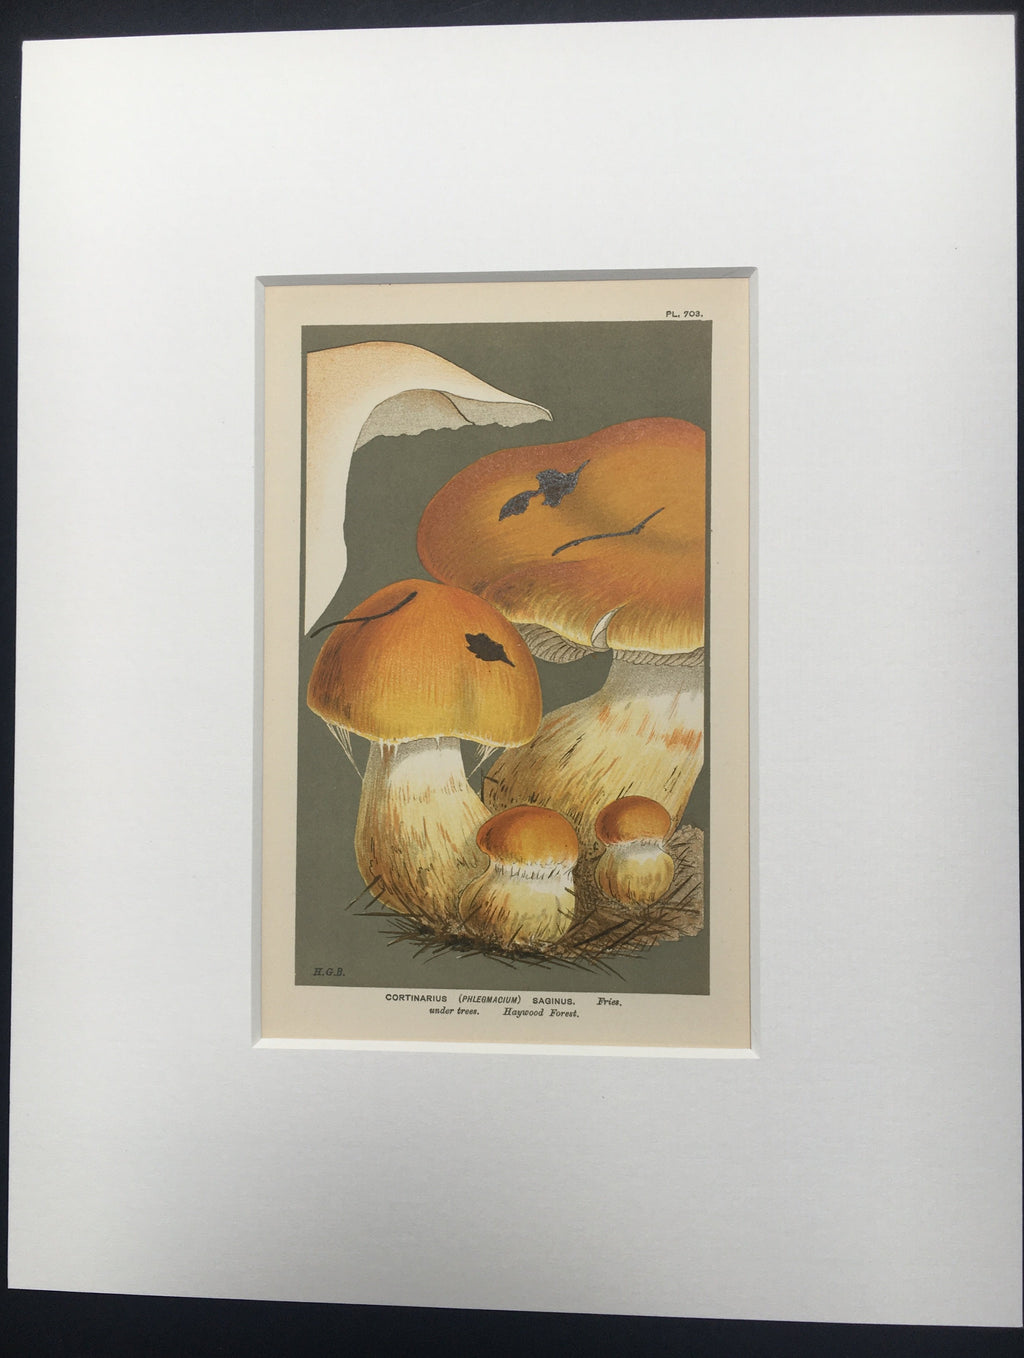 Late c19th Original Book Plate Mushroom - Cortinarius (Phlegmacium) Saginus - HAYWOOD FOREST